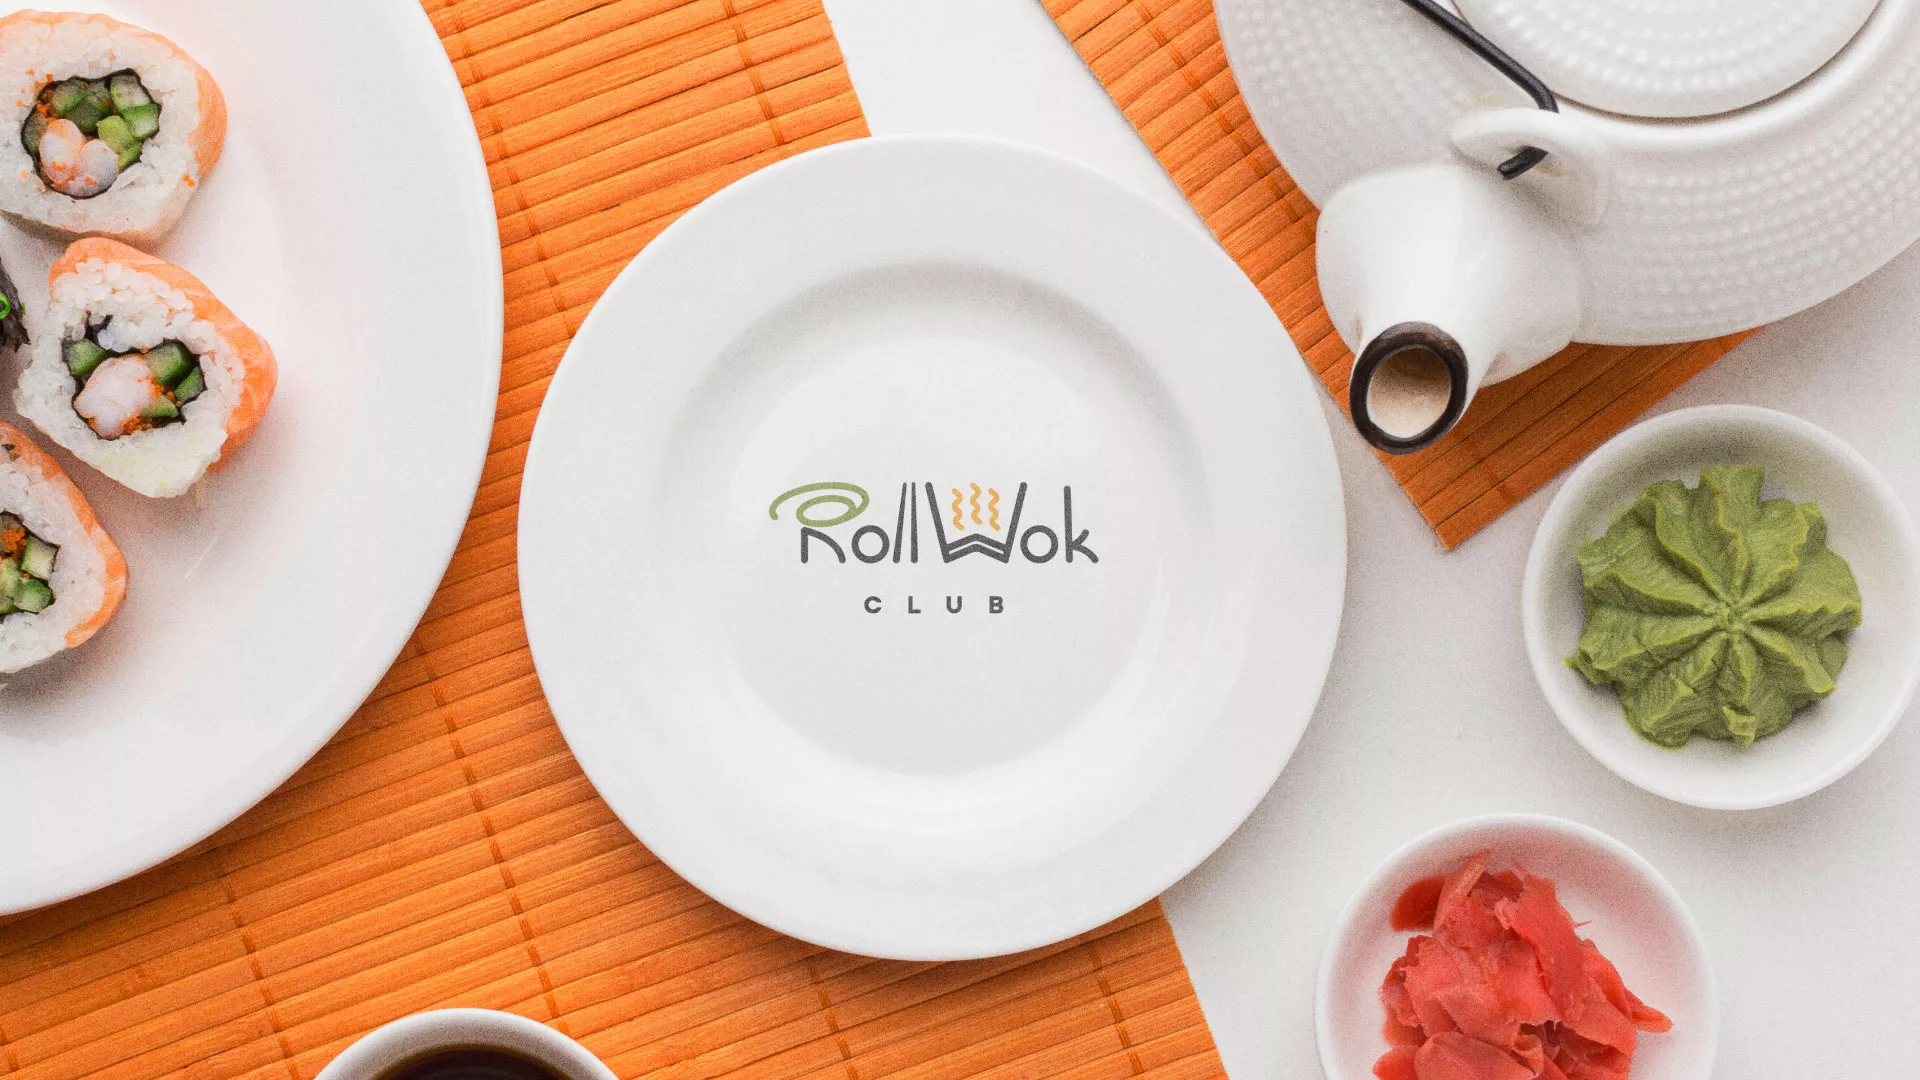 Разработка логотипа и фирменного стиля суши-бара «Roll Wok Club» в Кинели